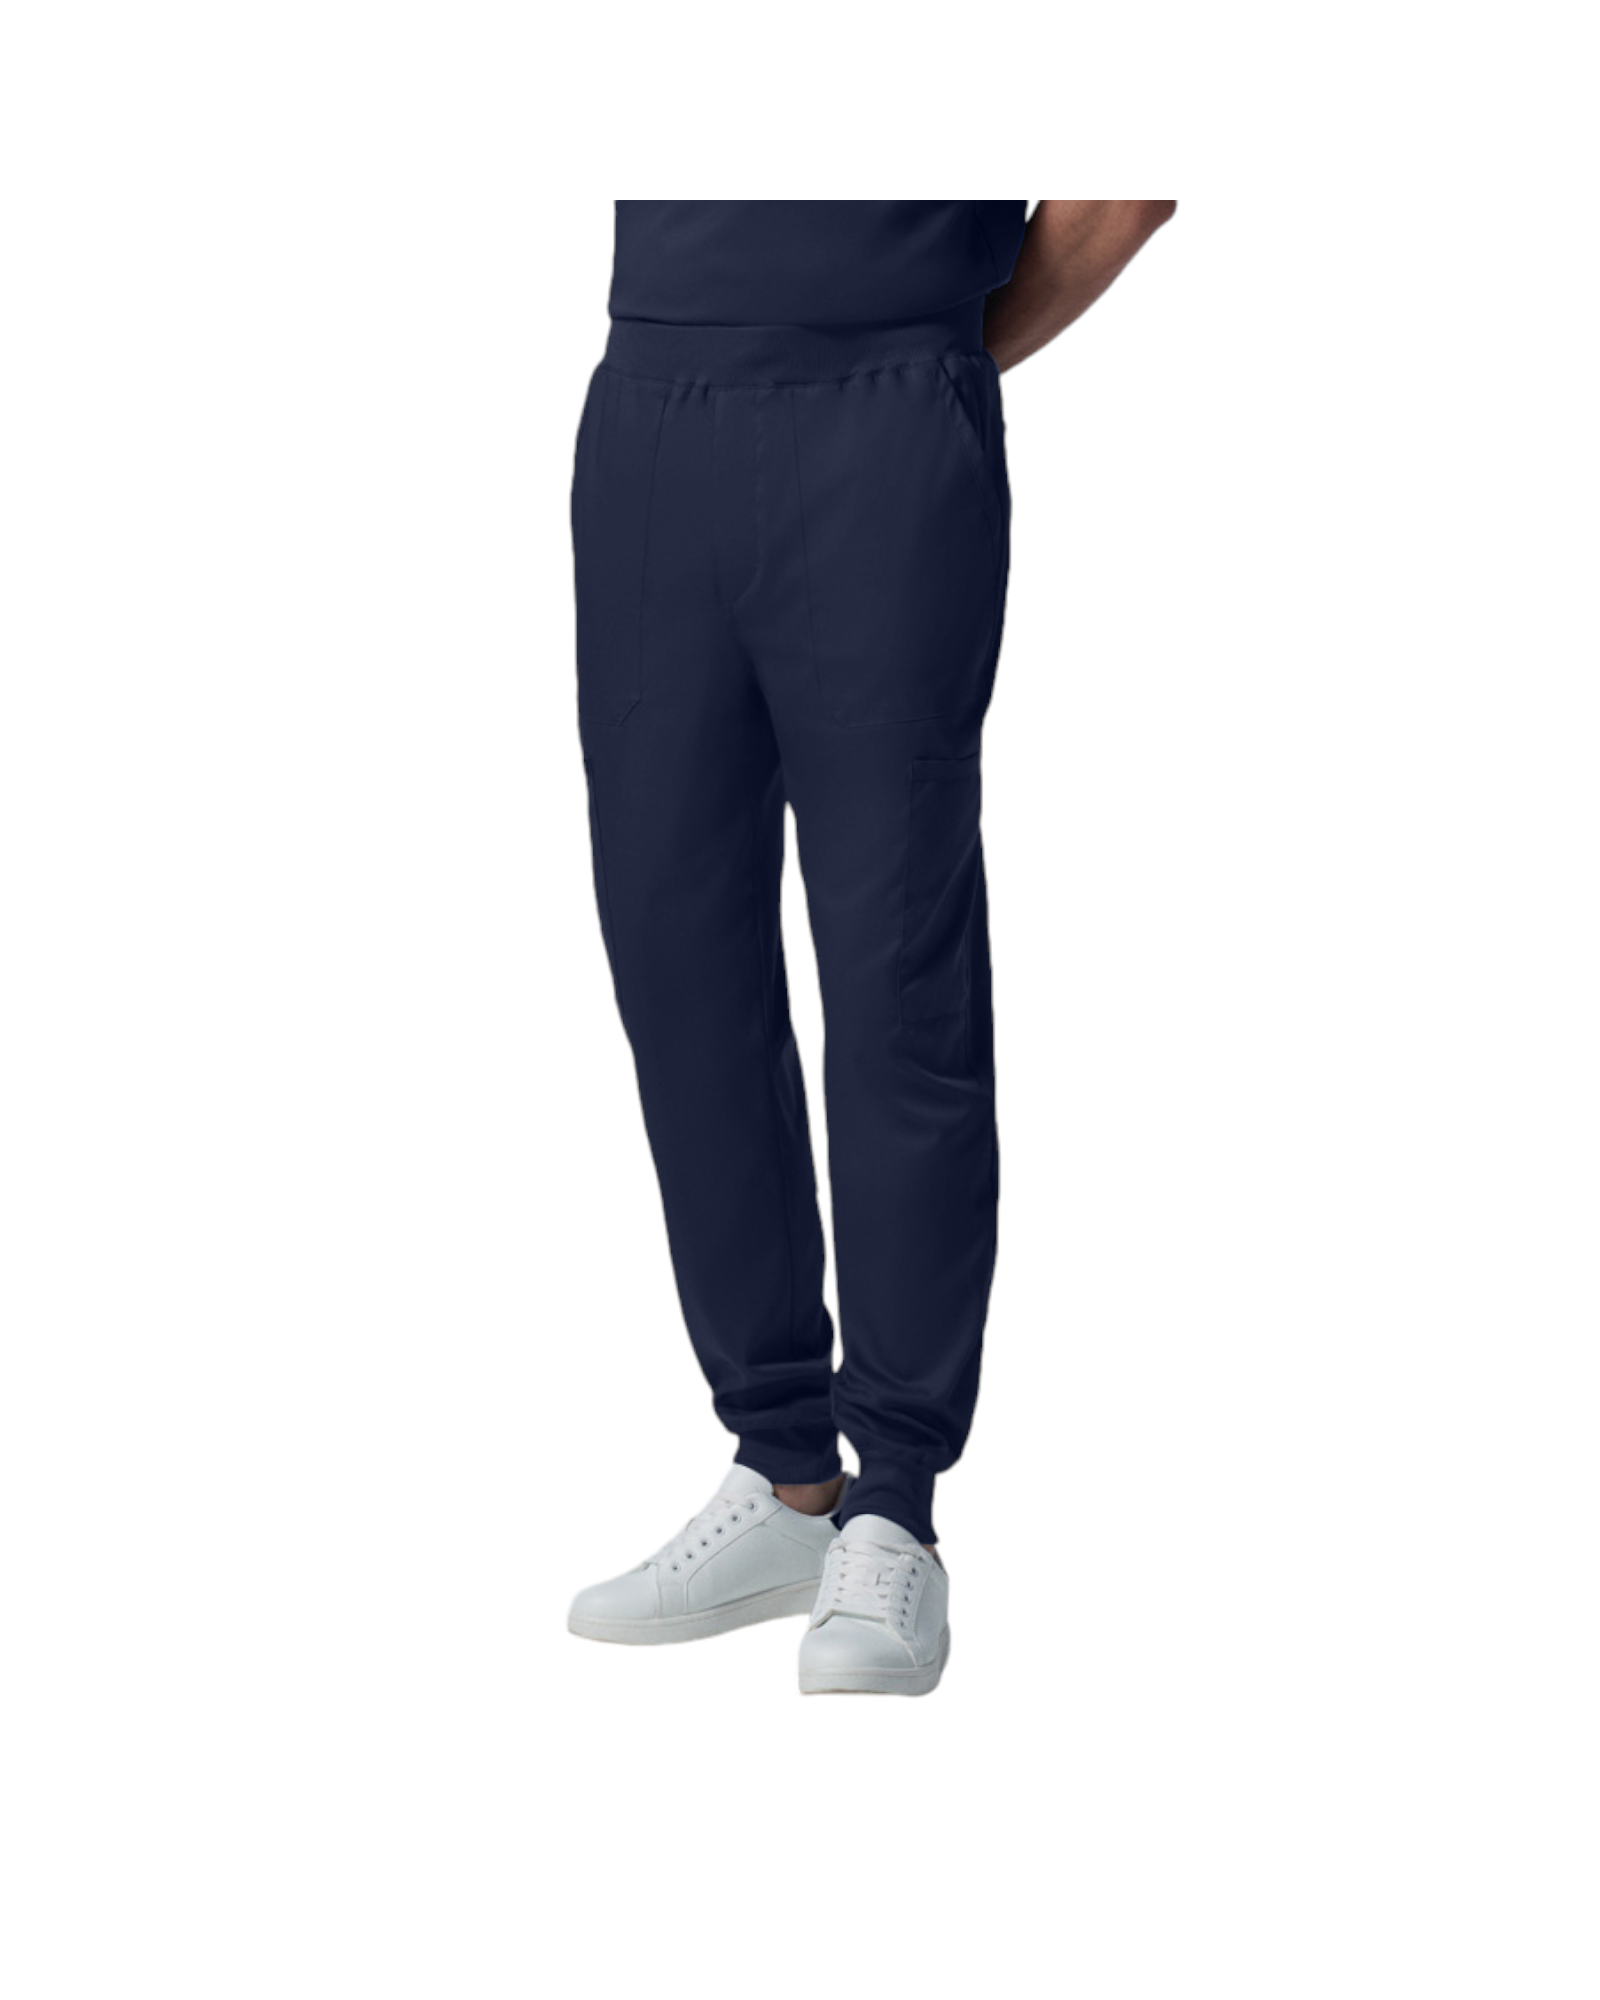 Pantalon jogger pour hommes Landau Proflex #LB407 couleur Marine